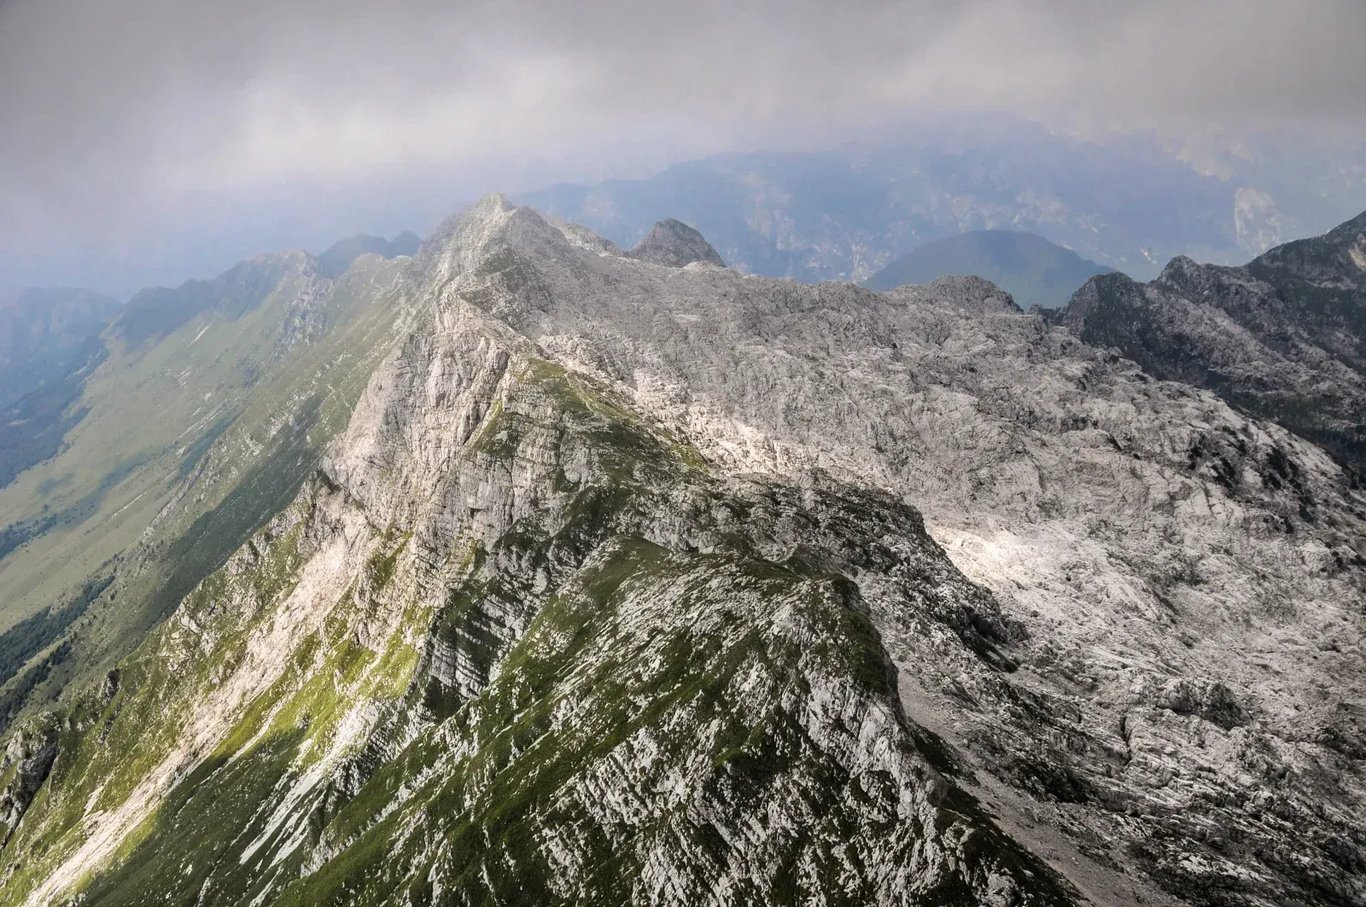 Berg  Krn (2,244 m), Slowenien – Wandern, Klettern, Hütten...